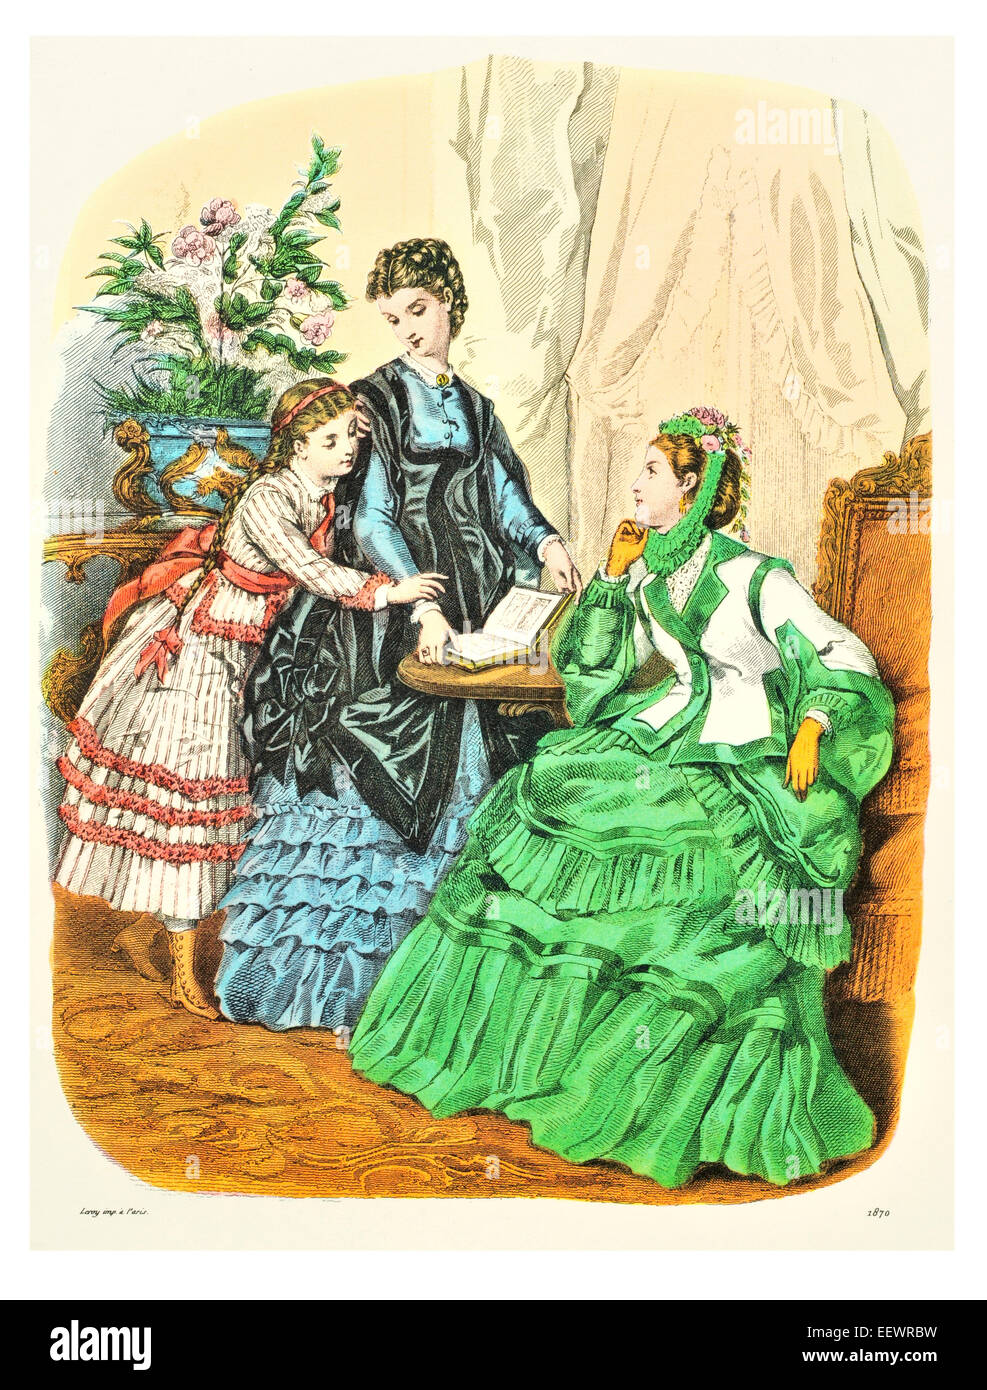 La Mode Illustree 1870 trajes de época victoriana moda vestido vestidos vestido falda velo cuff lujos tapa muselina bordado Foto de stock